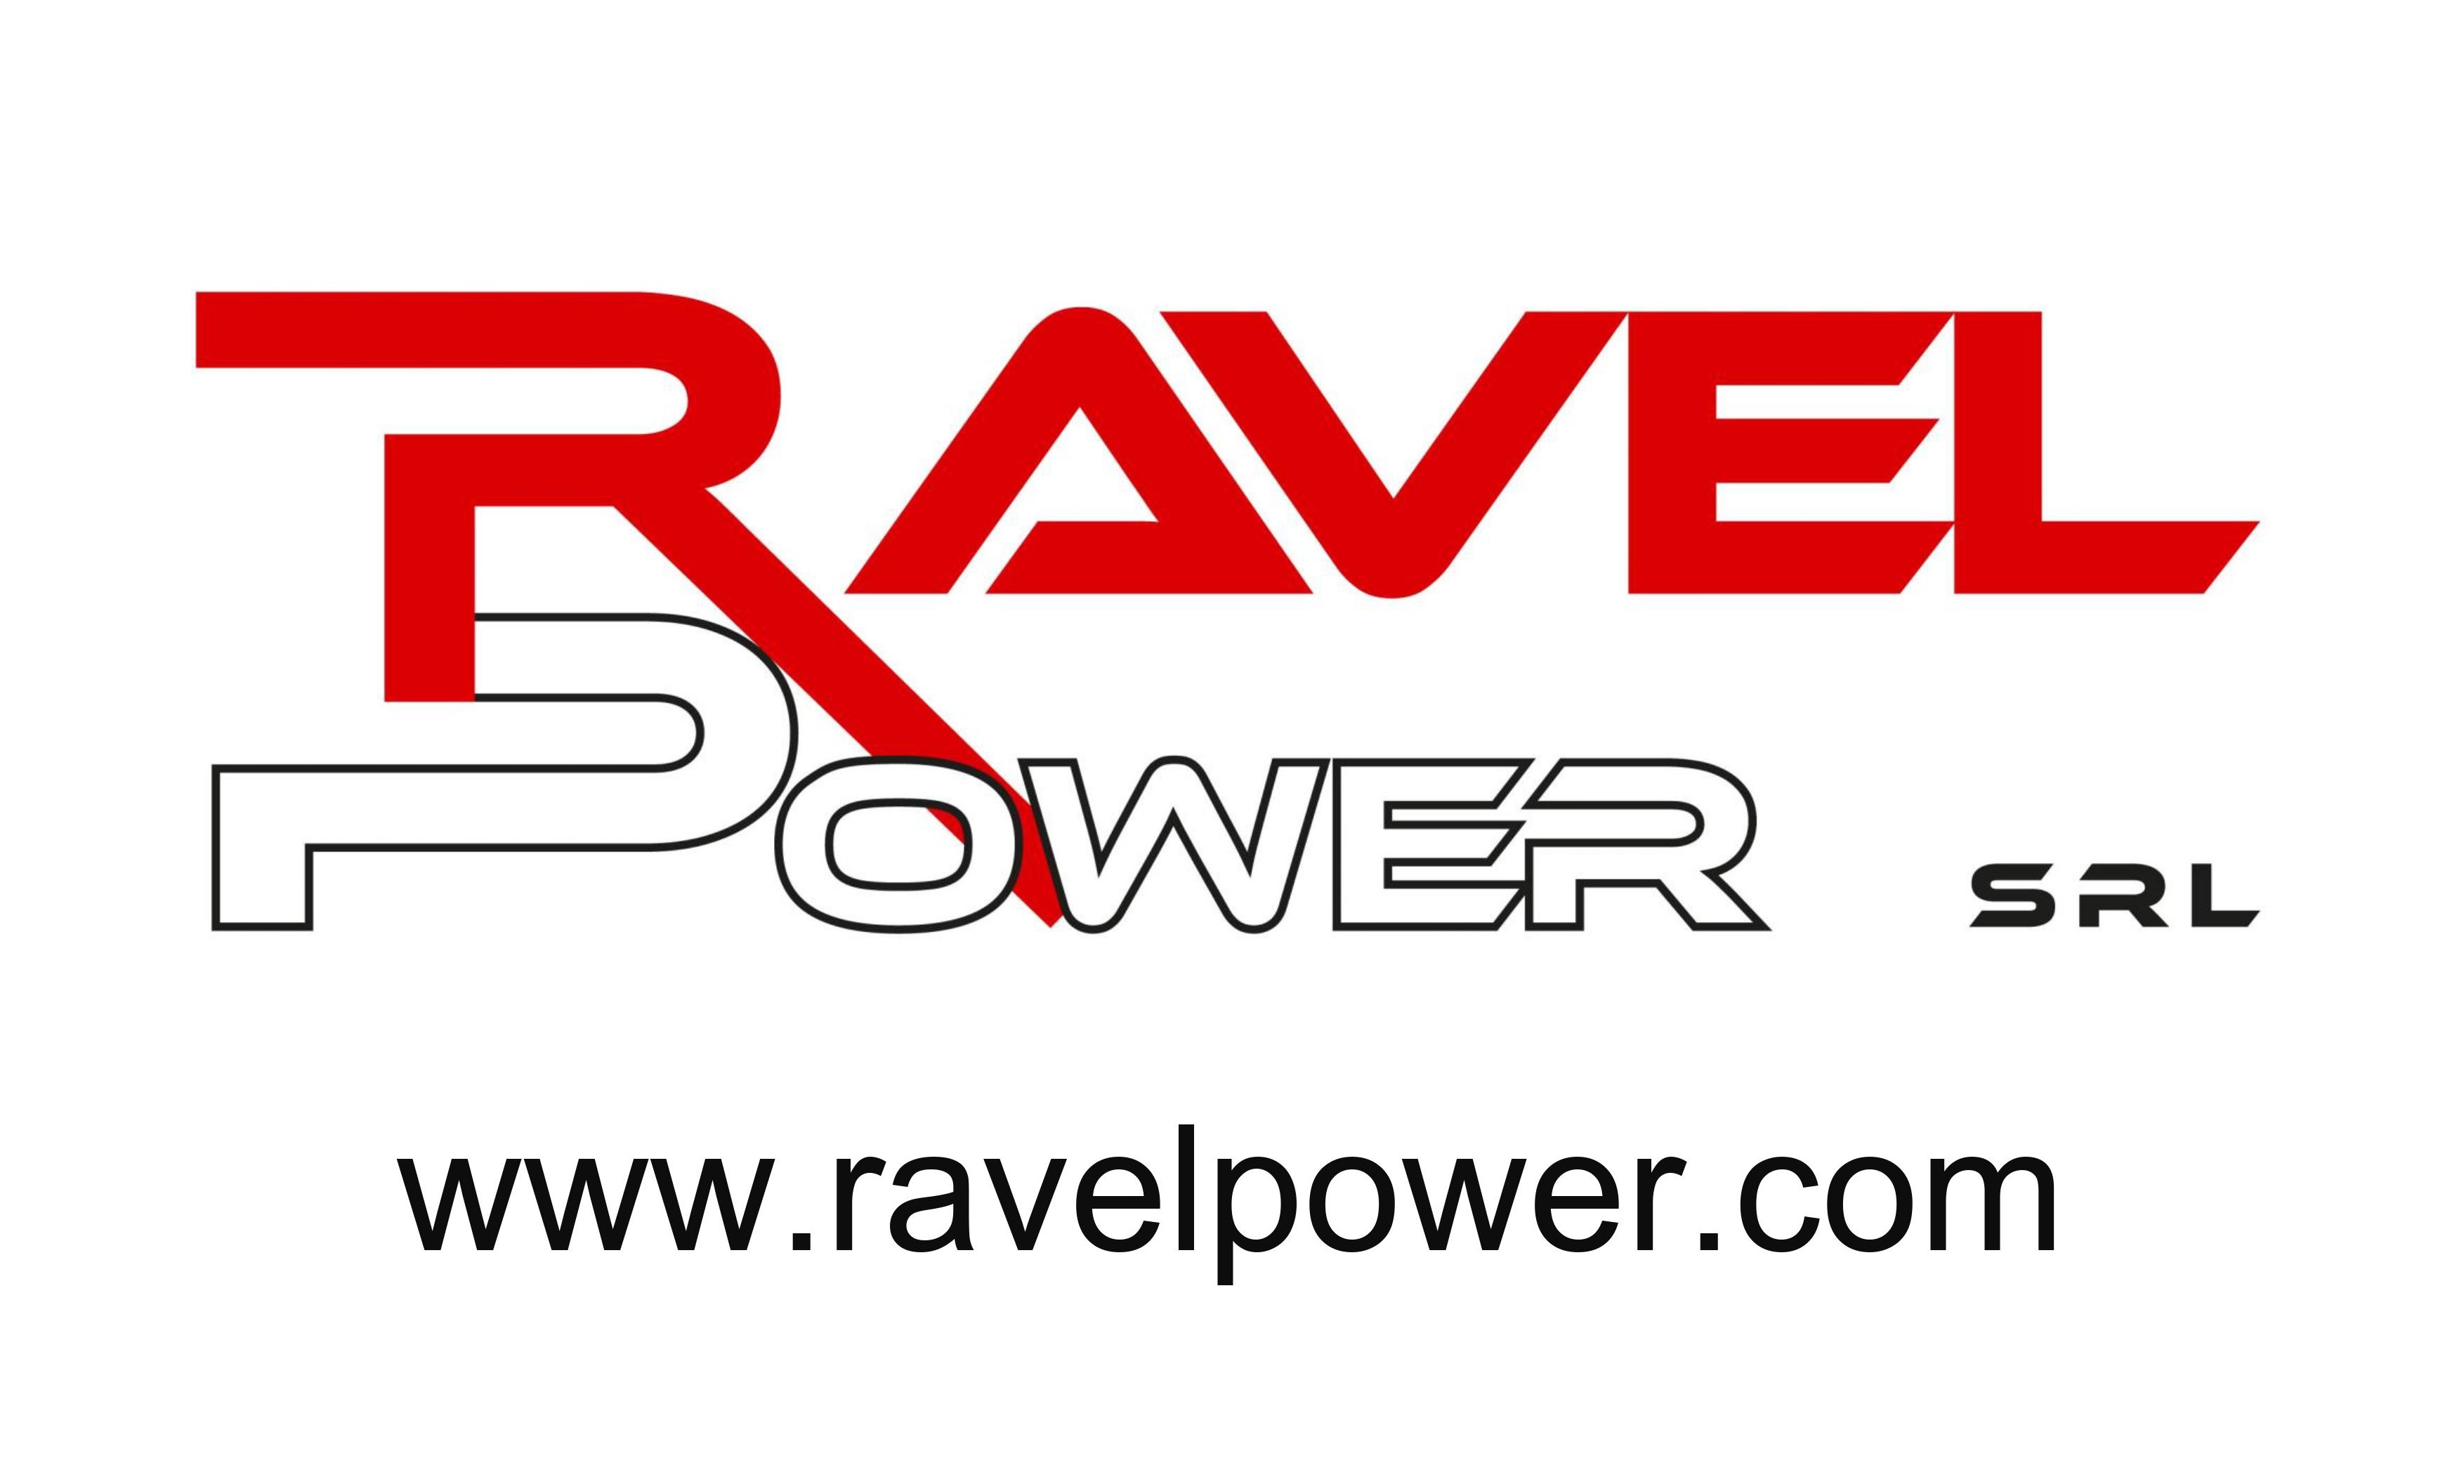 Ravel Power